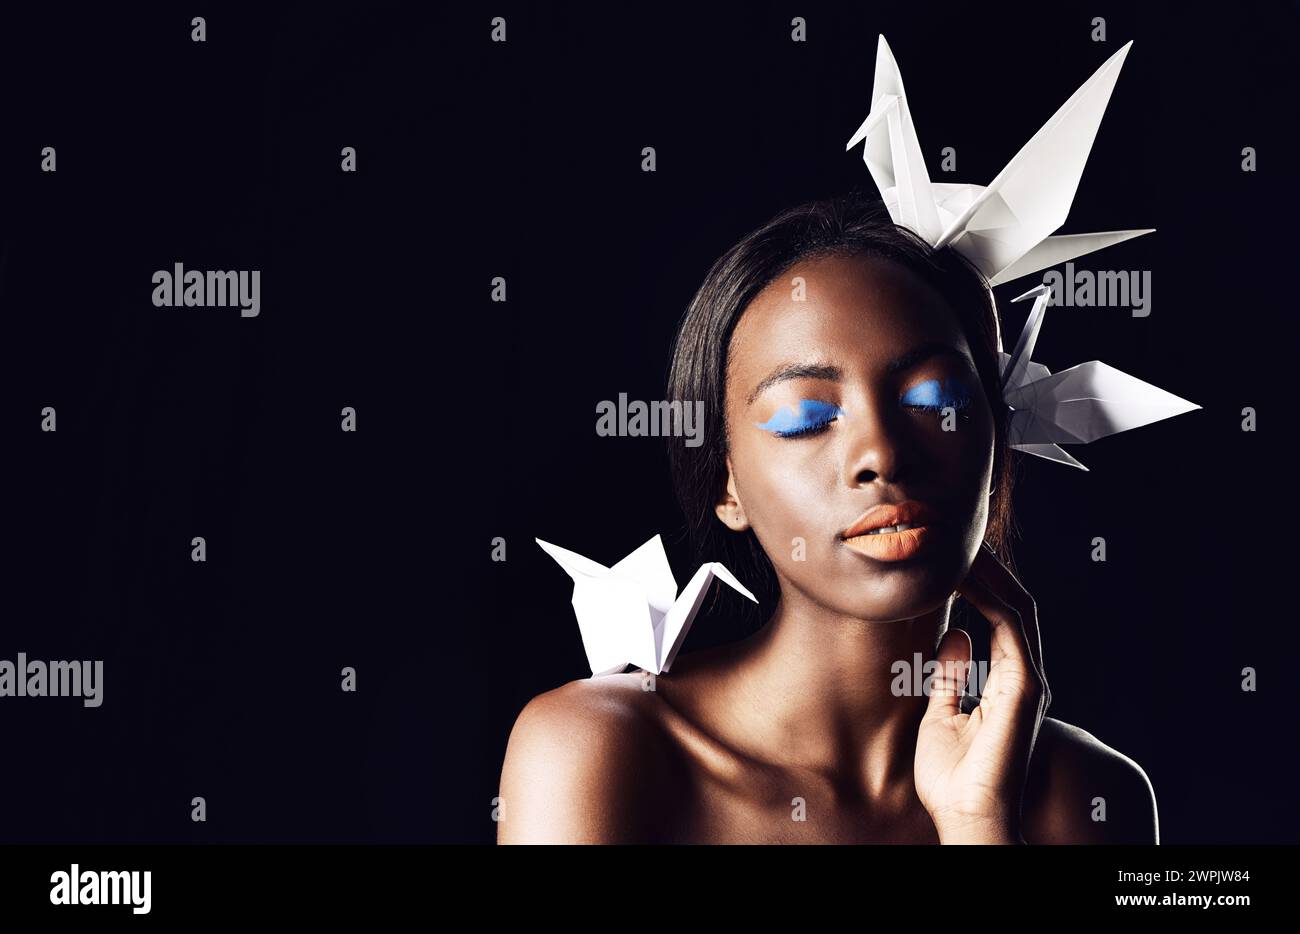 Schwarze Frau, Make-up und schöne Kunst mit Schönheit, Origami-Vögeln oder Kosmetik auf dunklem Studiohintergrund. Nahaufnahme oder Gesicht einer afrikanischen weiblichen Person oder Stockfoto